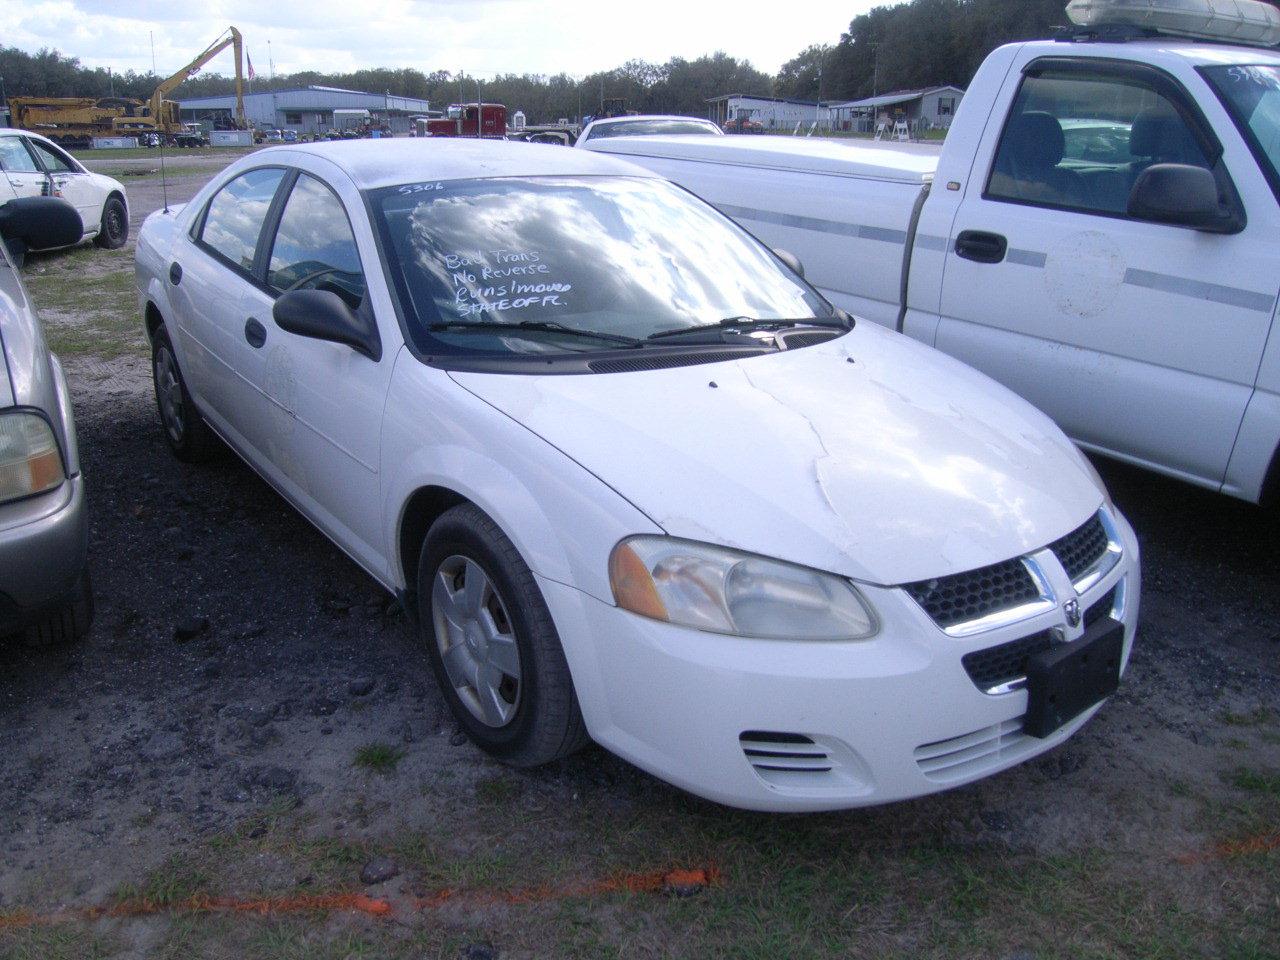 3-06117 (Cars-Sedan 4D)  Seller:Florida State DOT 2004 DODG STRATUS